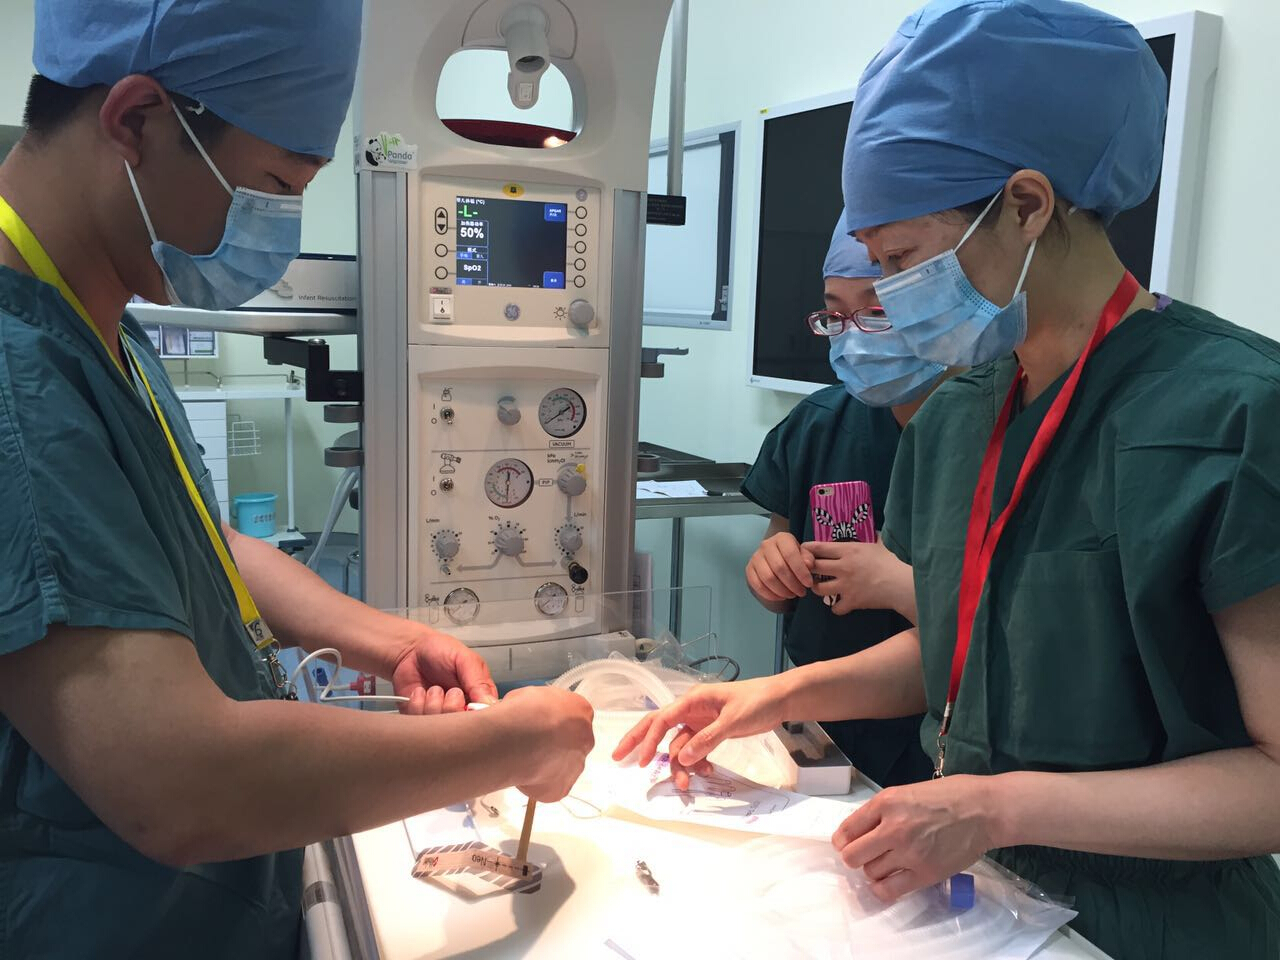 北京电力医院成功举办“2015年手术设备培训会”